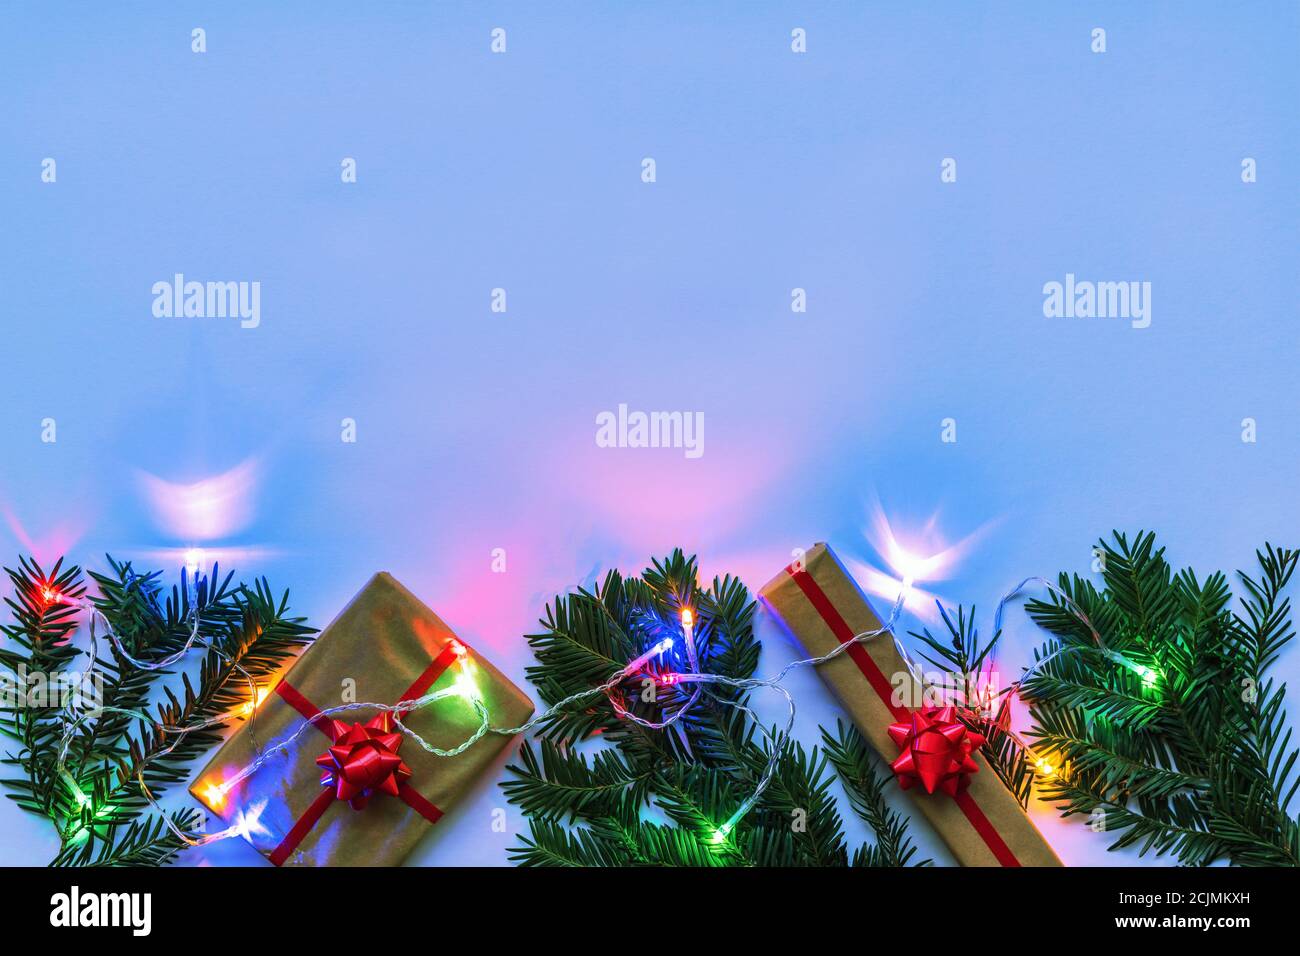 Boîtes avec brindilles de sapin de Noël et cadeau, guirlande avec lumières colorées, fond de couleur néon. Vue de dessus, plat, espace de copie. Banque D'Images